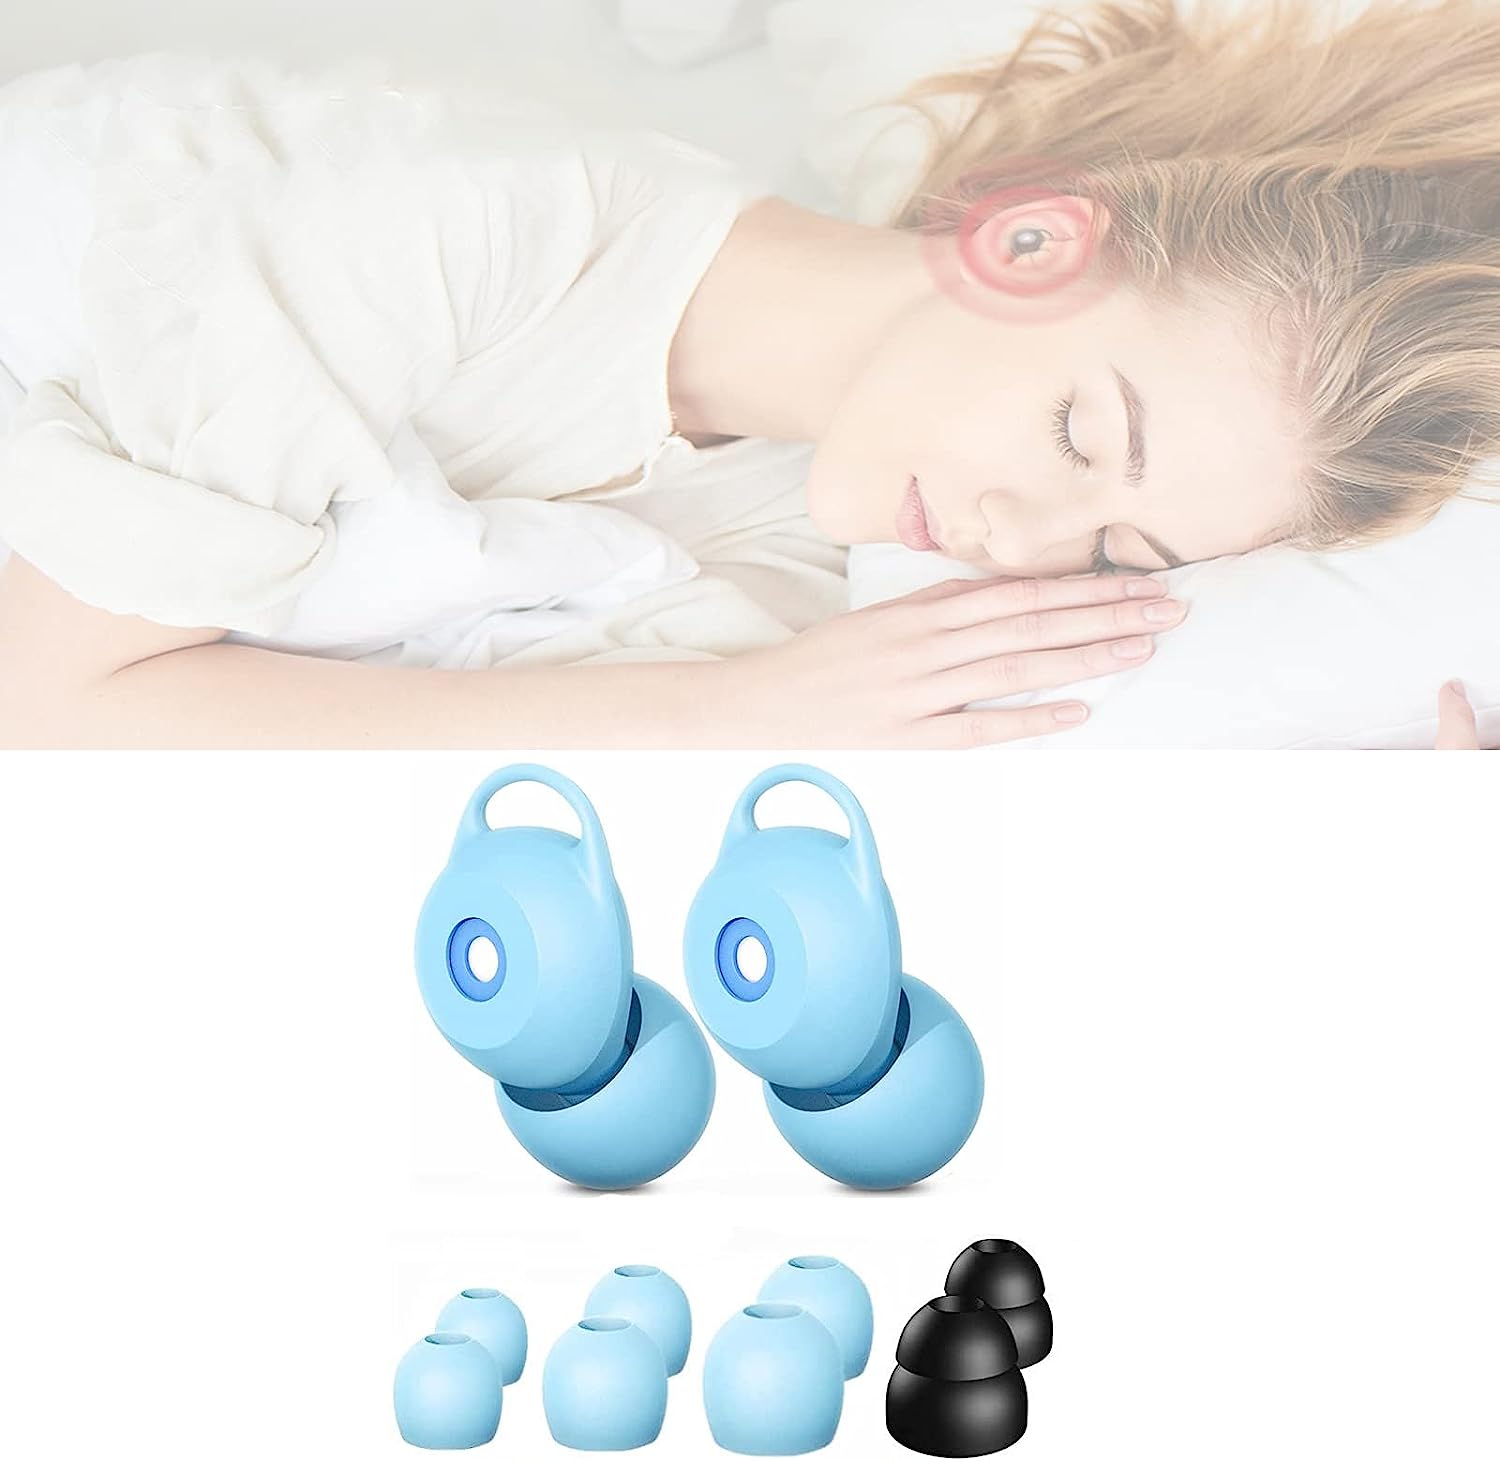 2枚セット 耳栓 騒音 遮音 睡眠用 ノイズキャンセリング 本体１ペア+4つサイズシリコンイヤーチッ...